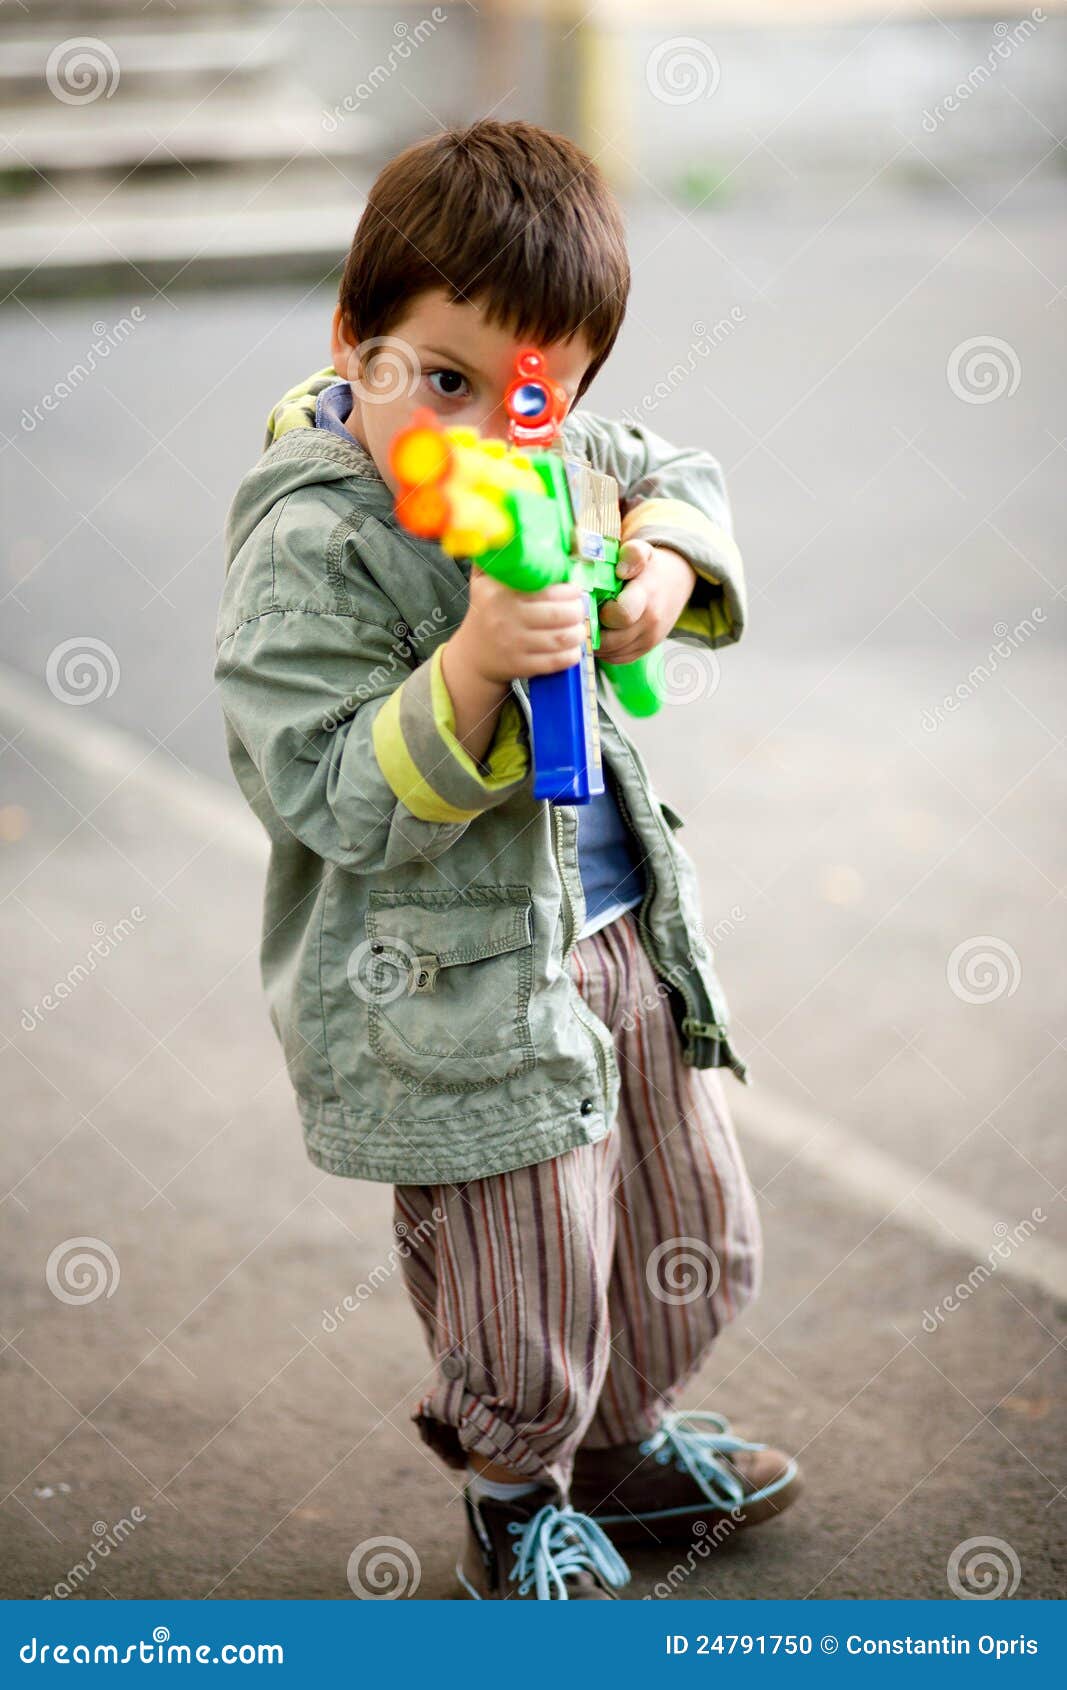 Zielen des Spielzeuggewehrs. Kind, das Spielzeuggewehr zielt. Betriebsbereites unveränderliches Feuer